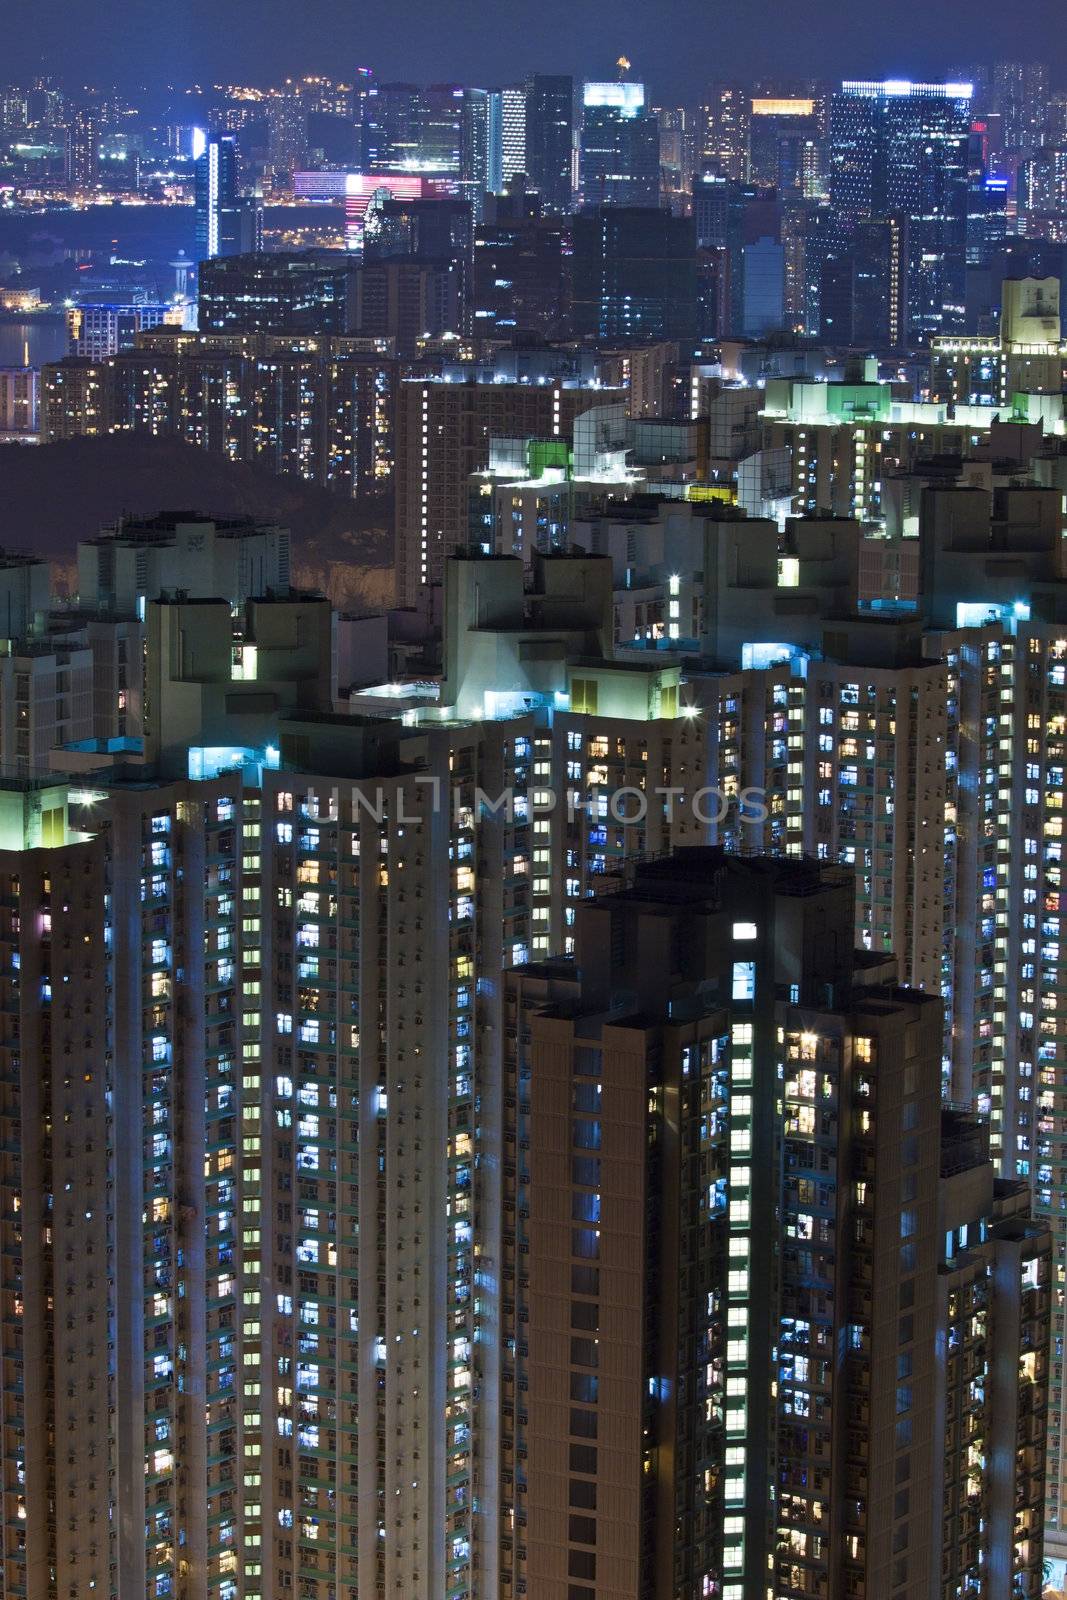 Hong Kong apartment blocks at night